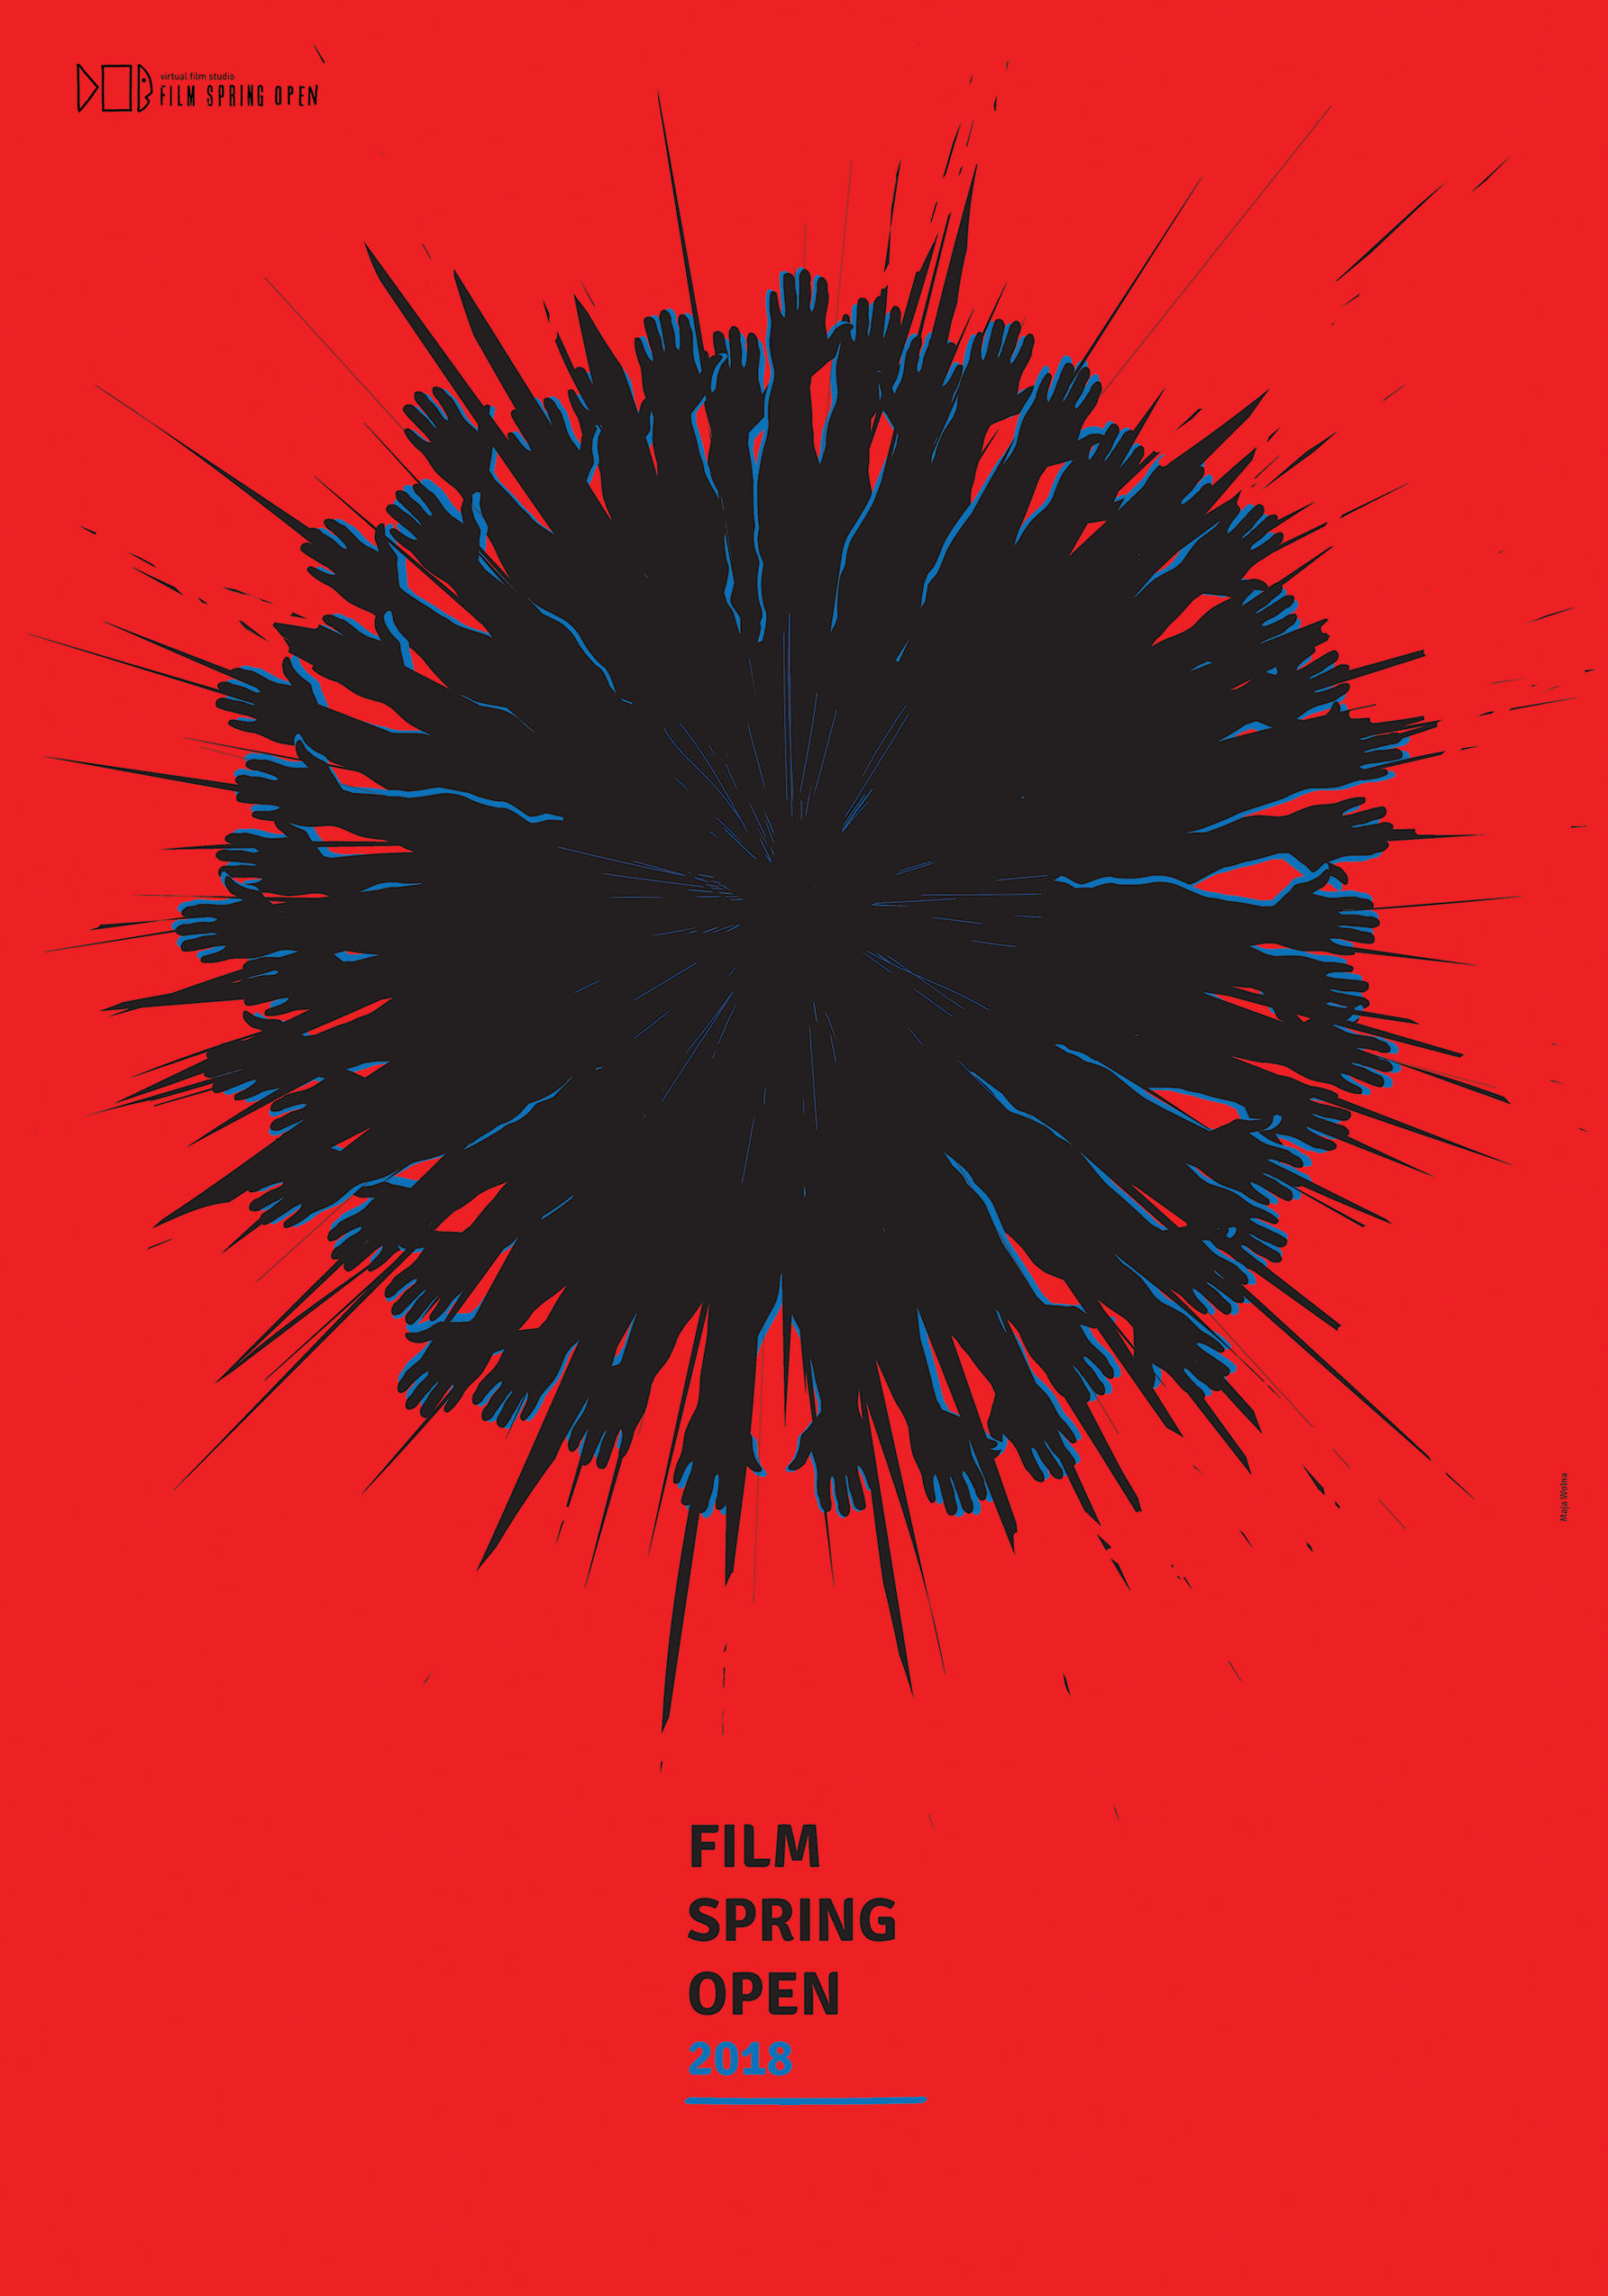 Plakat Plenery Film Spring Open 2018 przedstawia rozpędzoną tocząca się kulę złaożoną z rąk. Czerwone tło czarne ręce z niebieskim światłem od brzegu